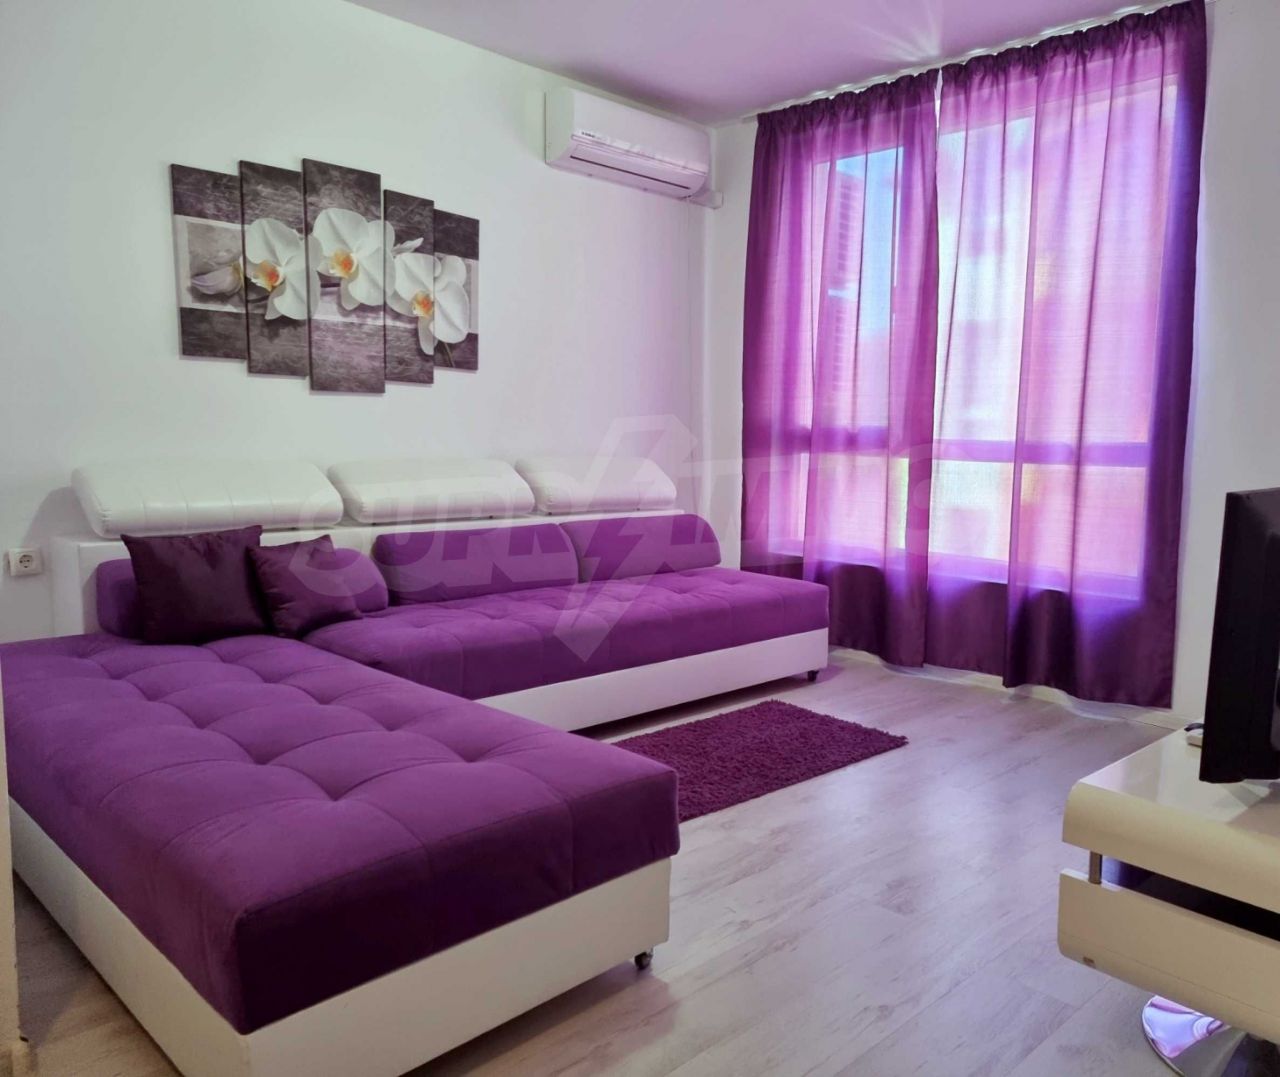 Apartment in Balchik, Bulgaria, 53.99 sq.m - picture 1